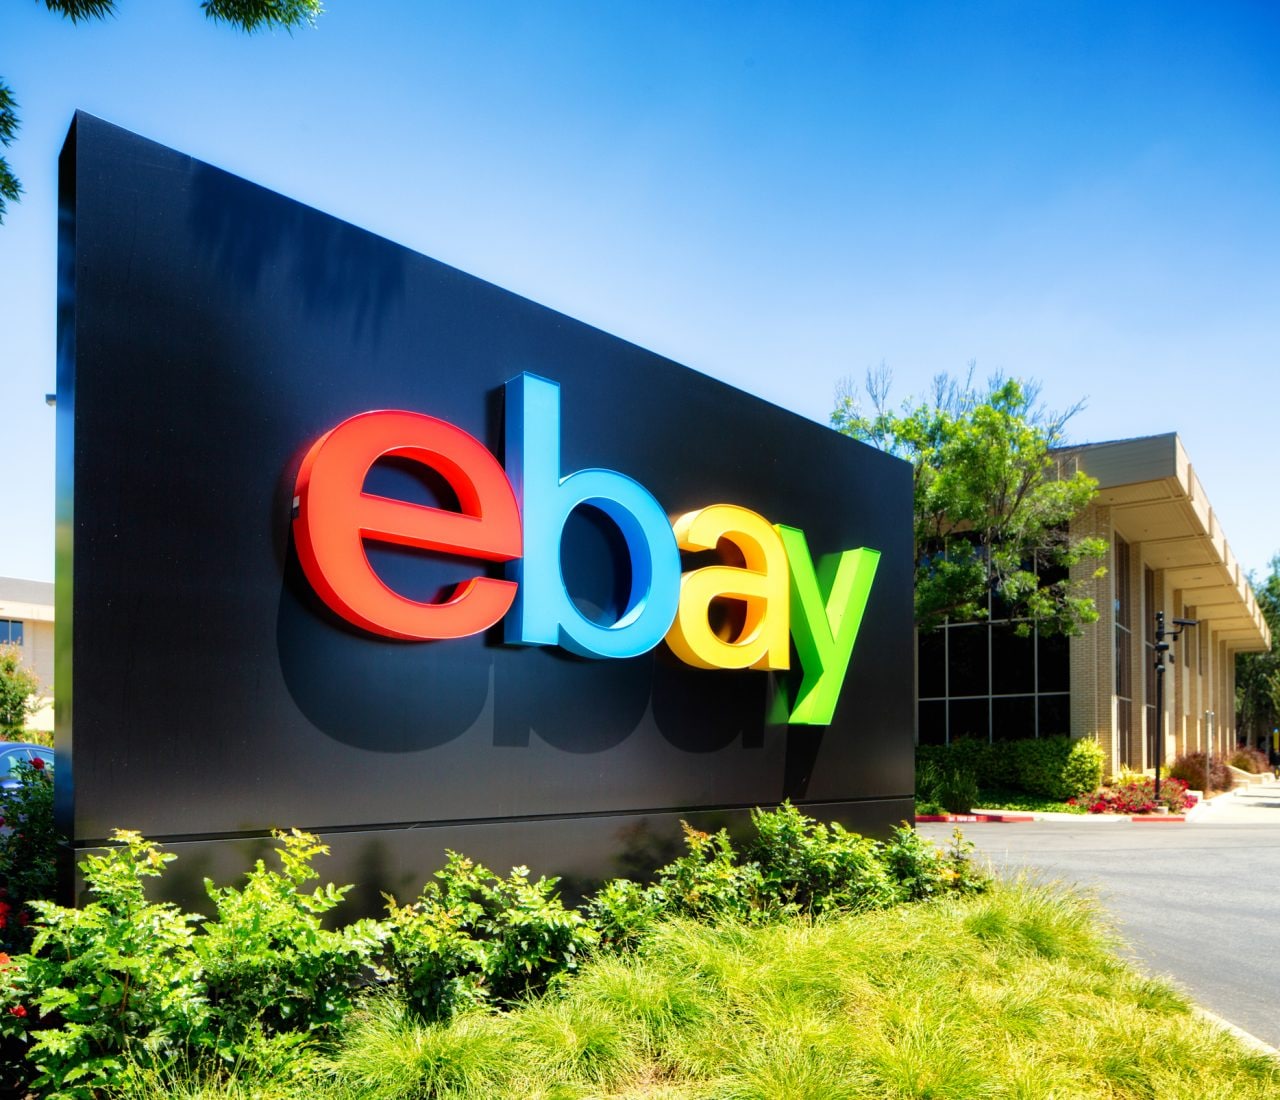 Offerte eBay Super Week fino al 3 novembre: sconti fino al 60% su tutto!